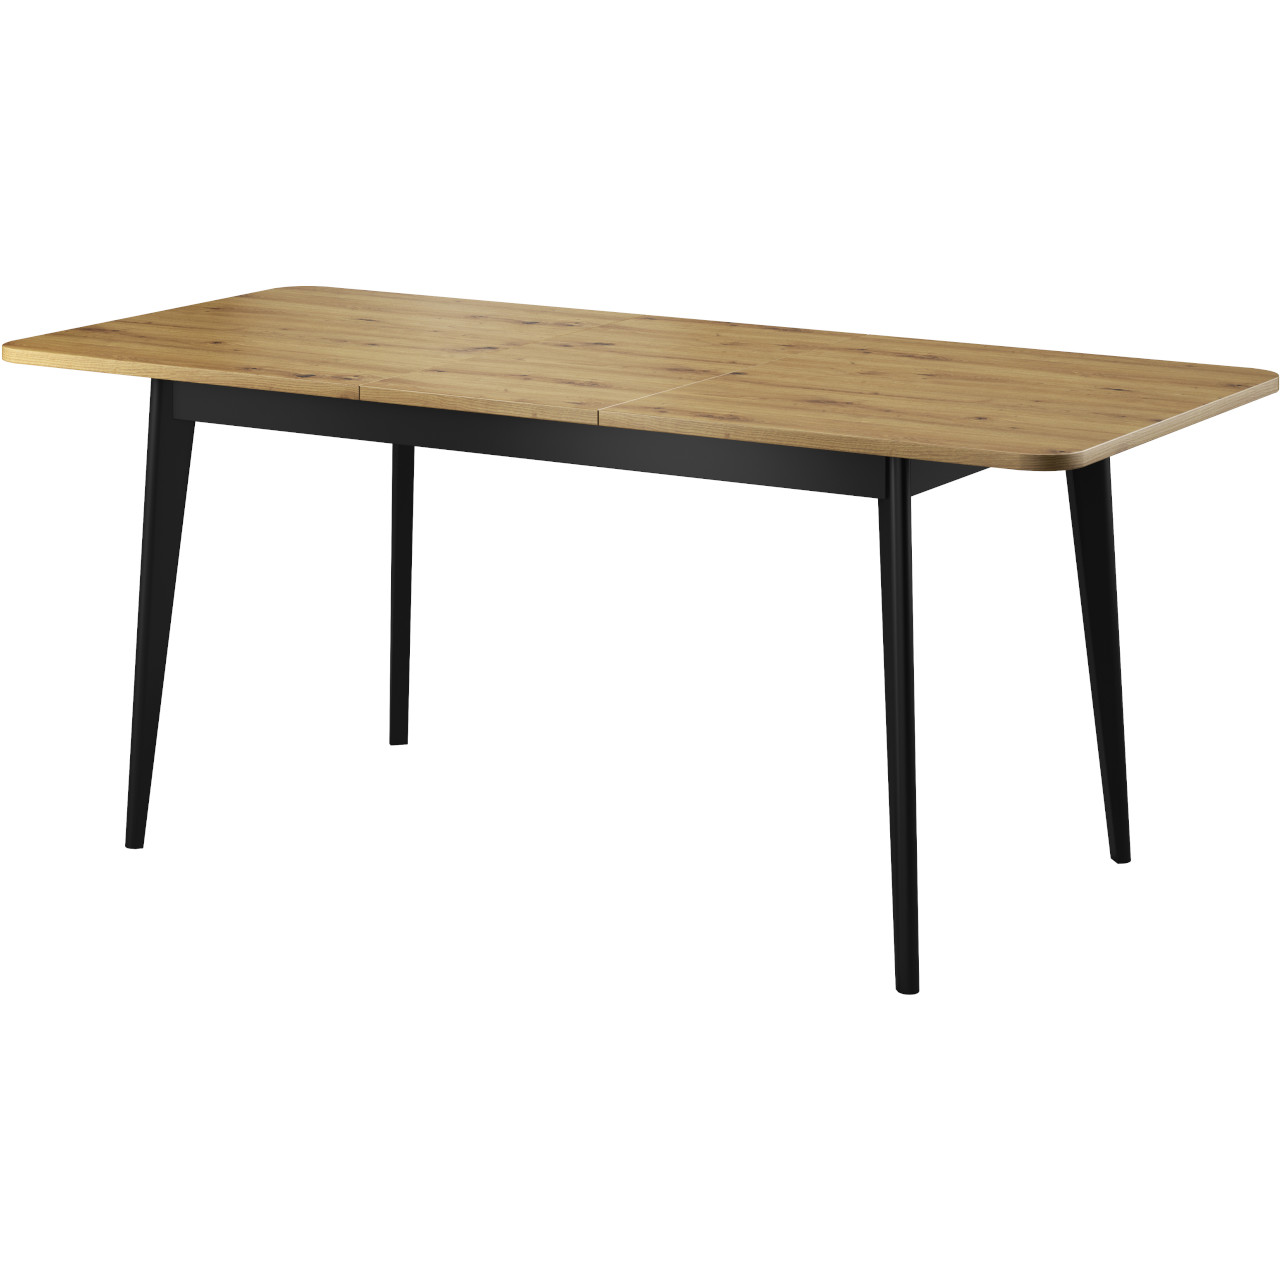 Table 140x80 NARDI 10 artisan oak / black